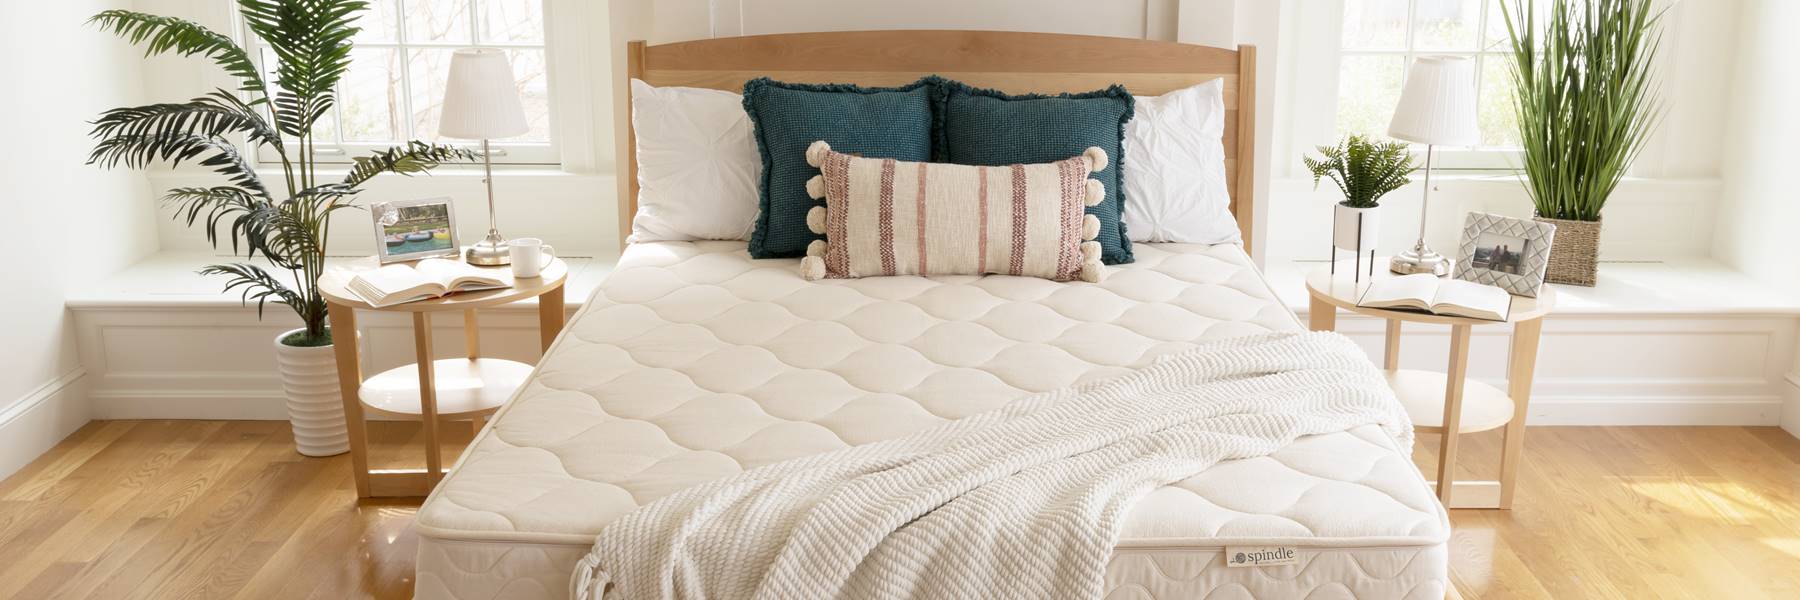 纺锤乳胶床垫与枕头揭开木床架与窗户的背景。